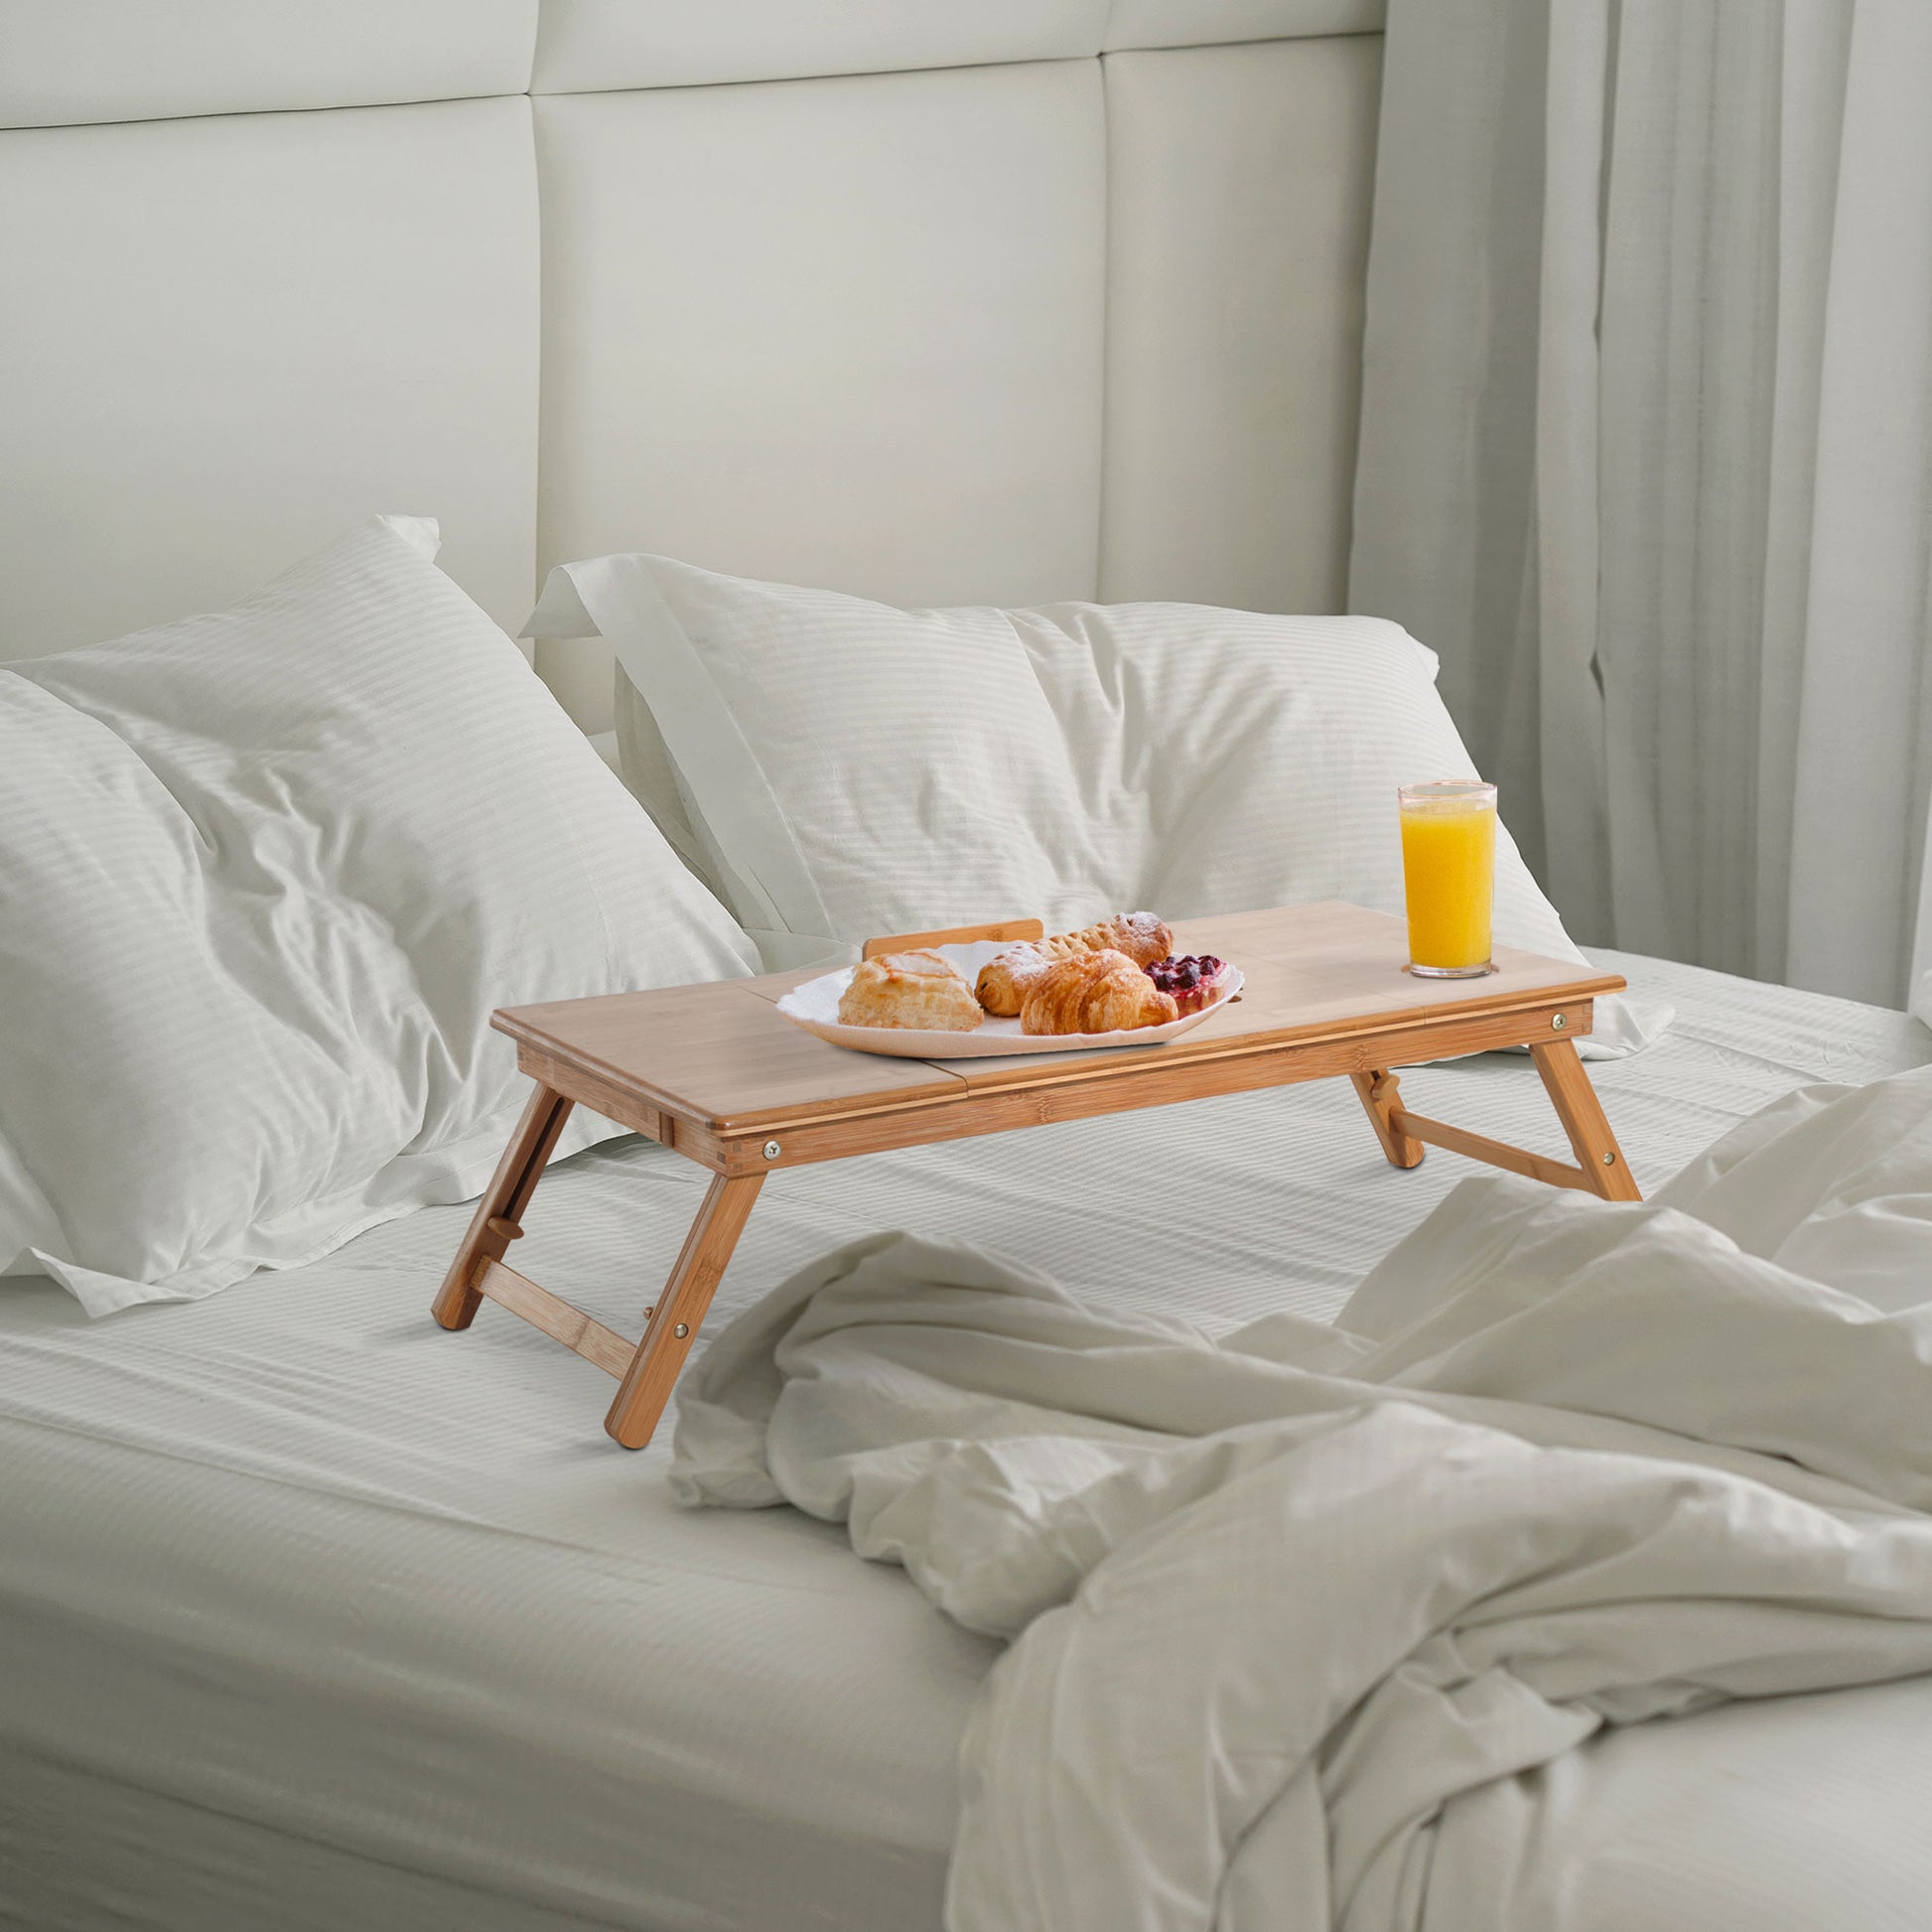  Mesa de cama para comer - Mesa de desayuno de bambú